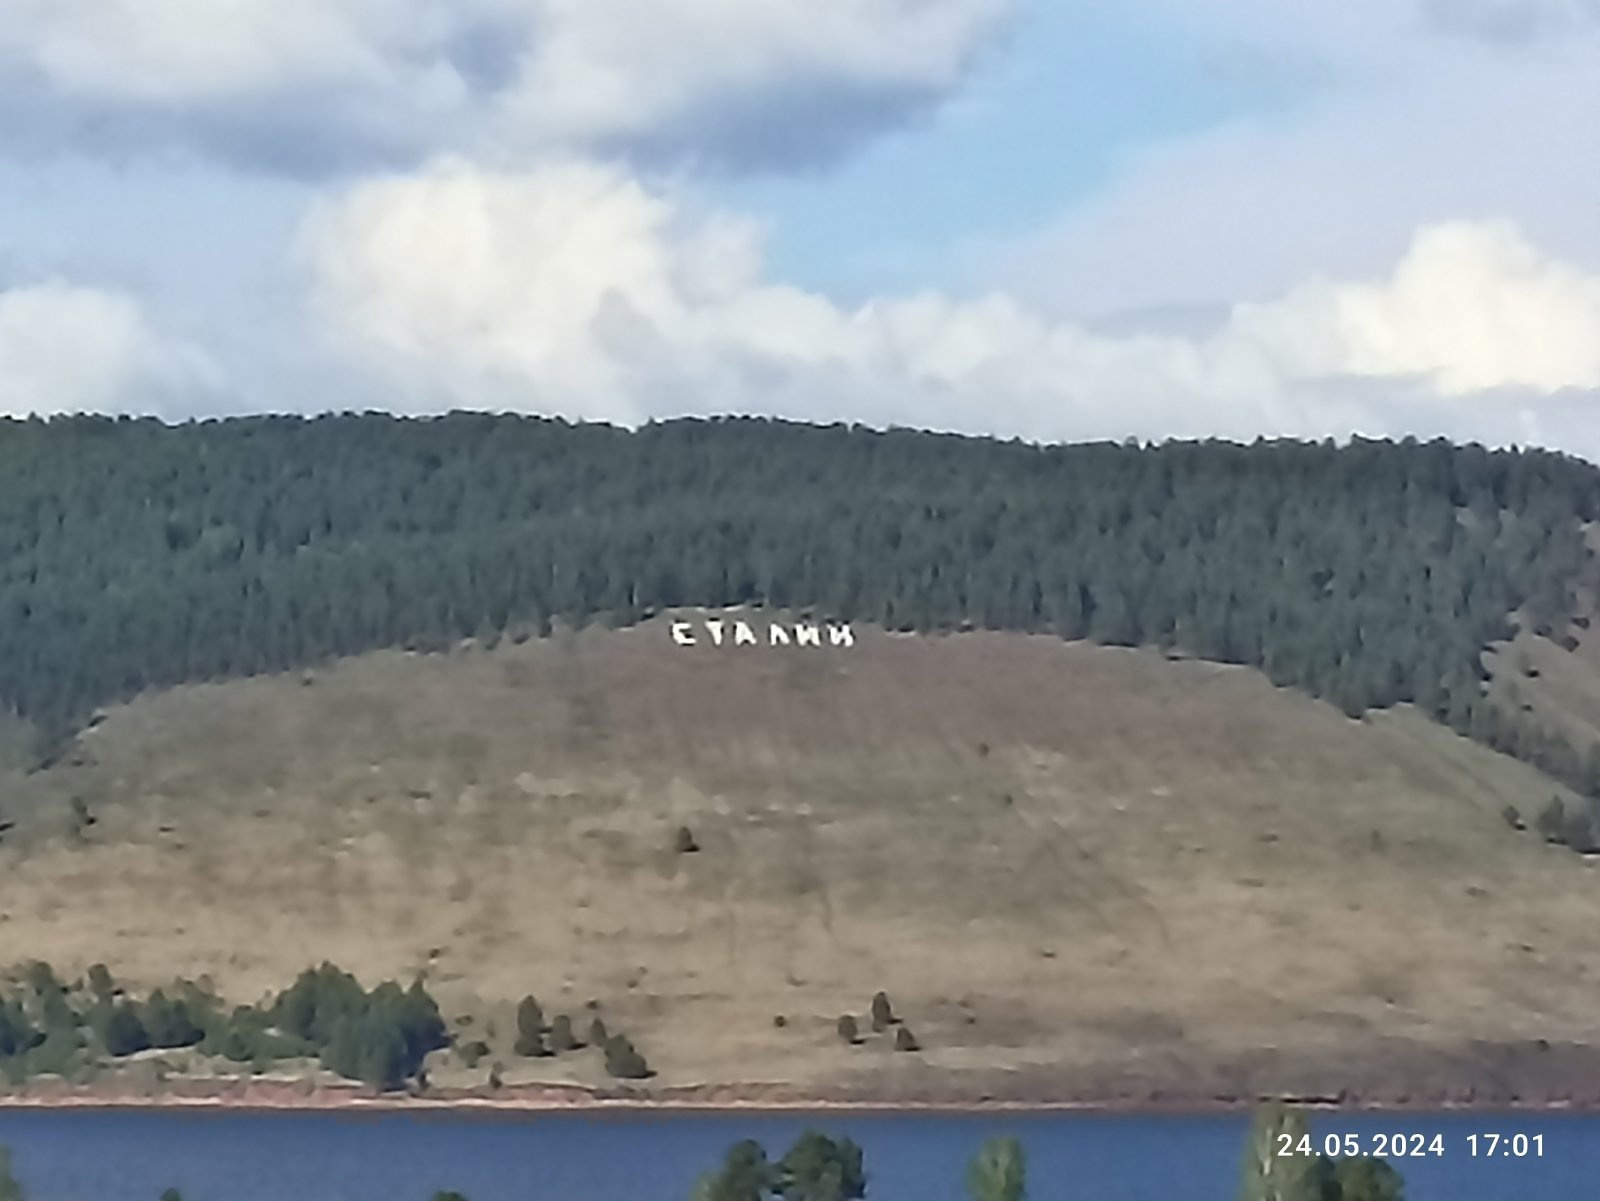 На горе в Иркутской области появилась огромная надпись «Сталин»